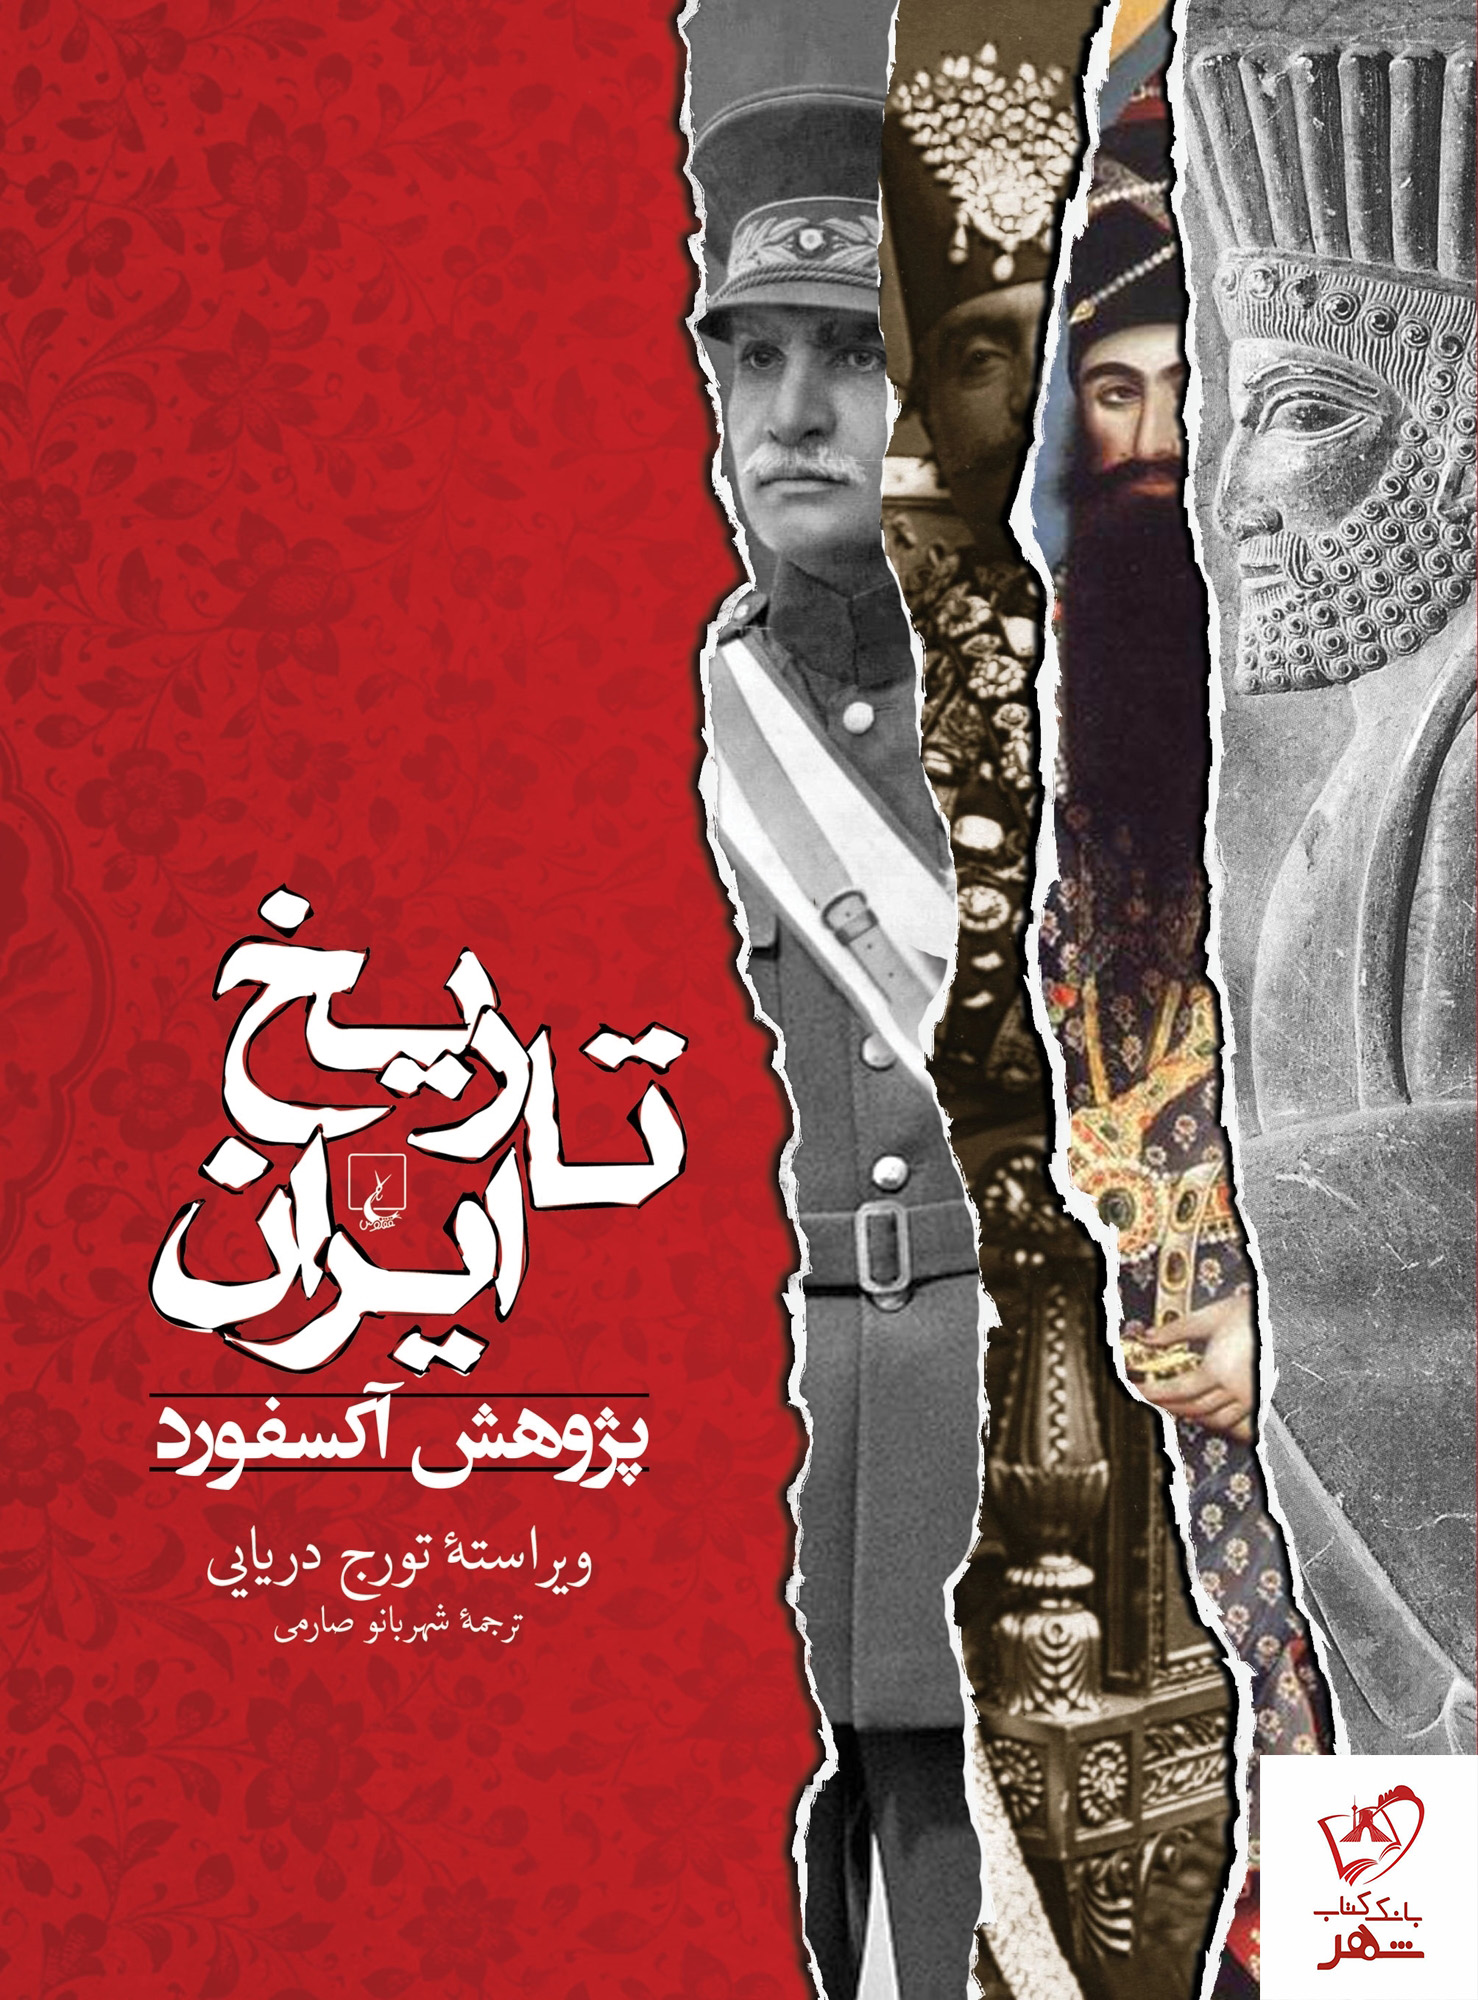 خرید کتاب تاریخ ایران پژوهش آكسفورد از نشر ققنوس